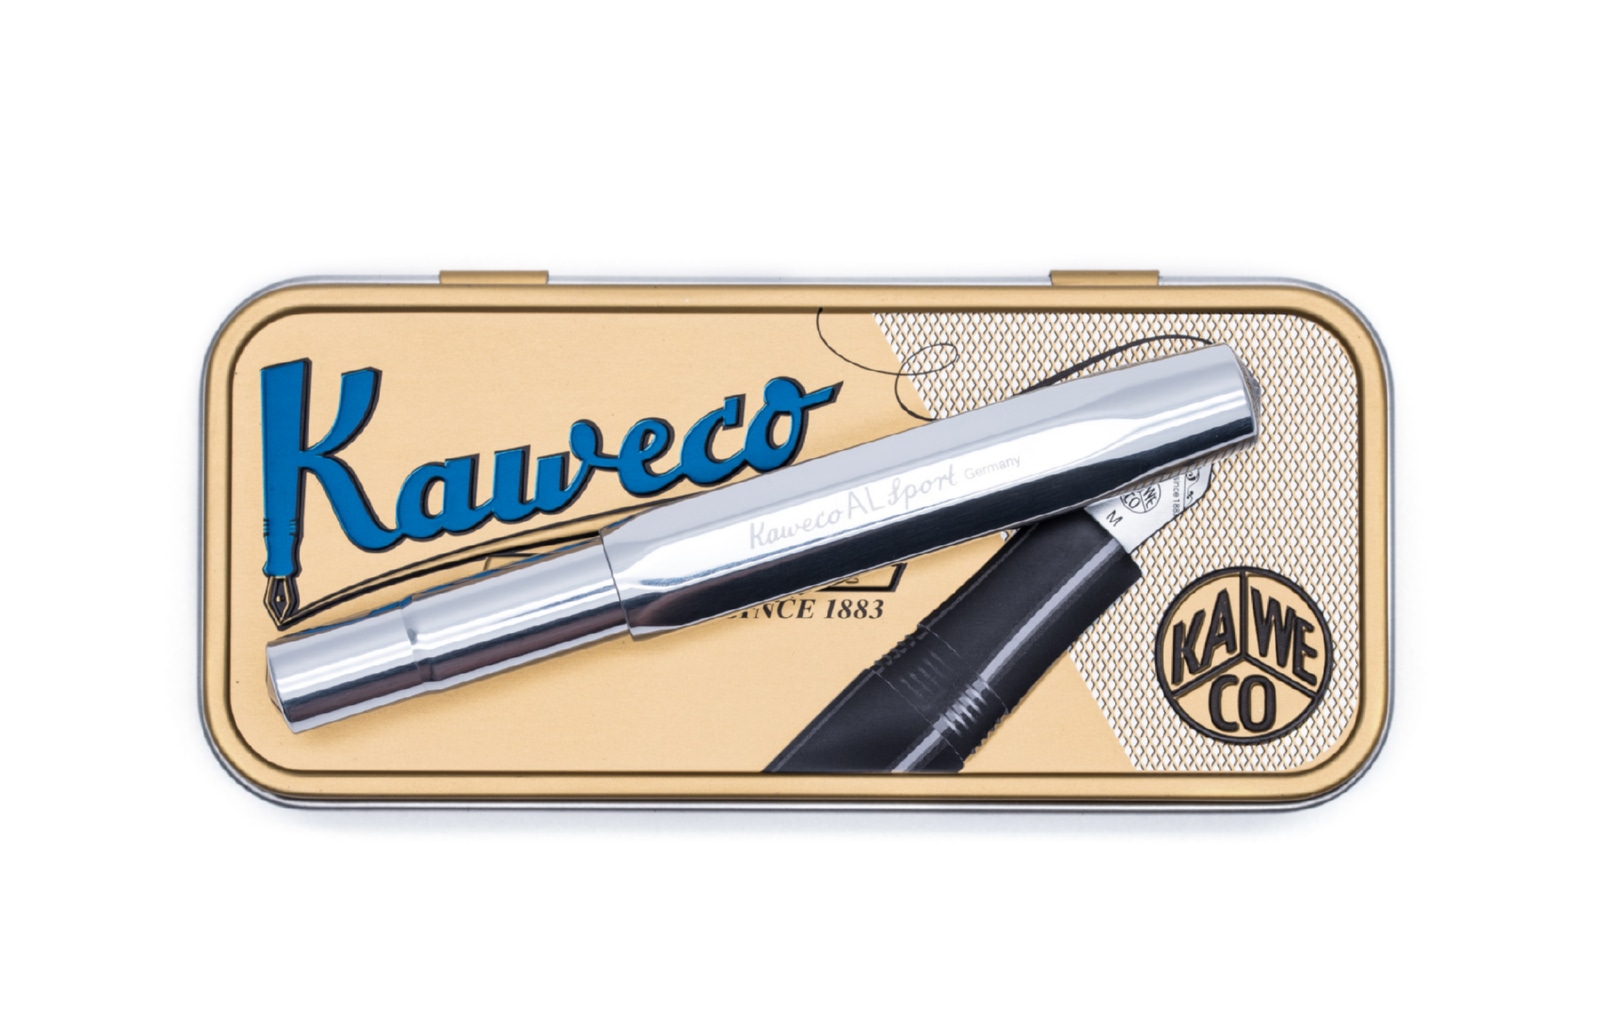 Ручка-роллер KAWECO AL Sport 0.7мм серебристый